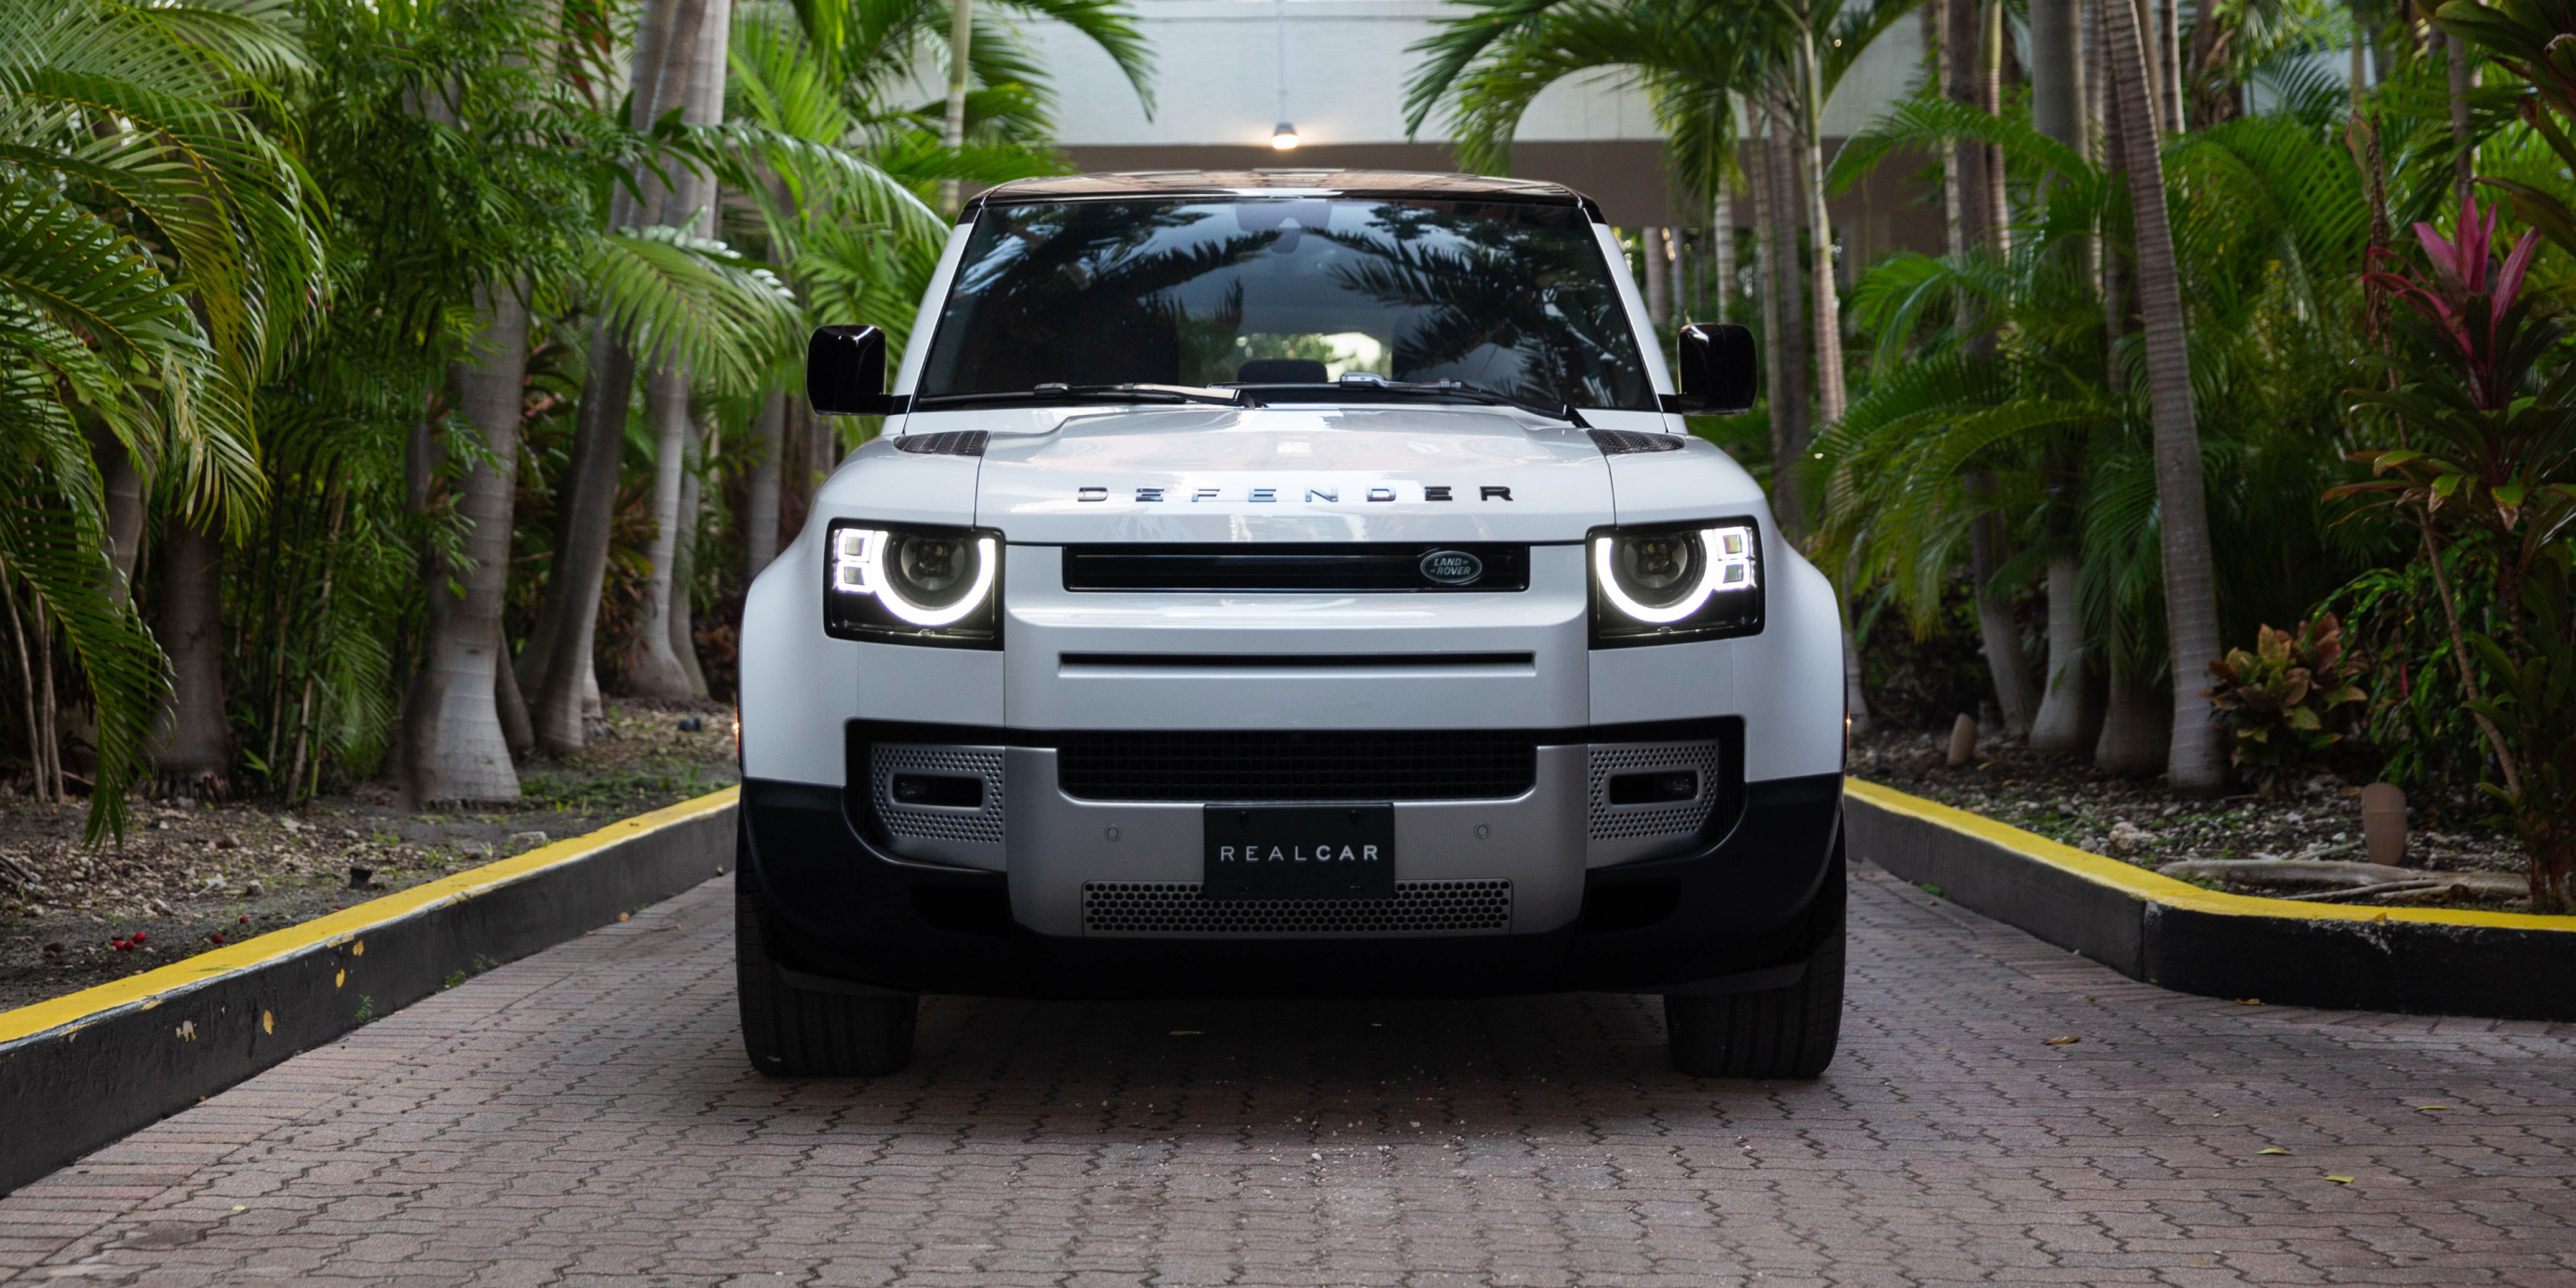 RealCar Land Rover Defender for rental